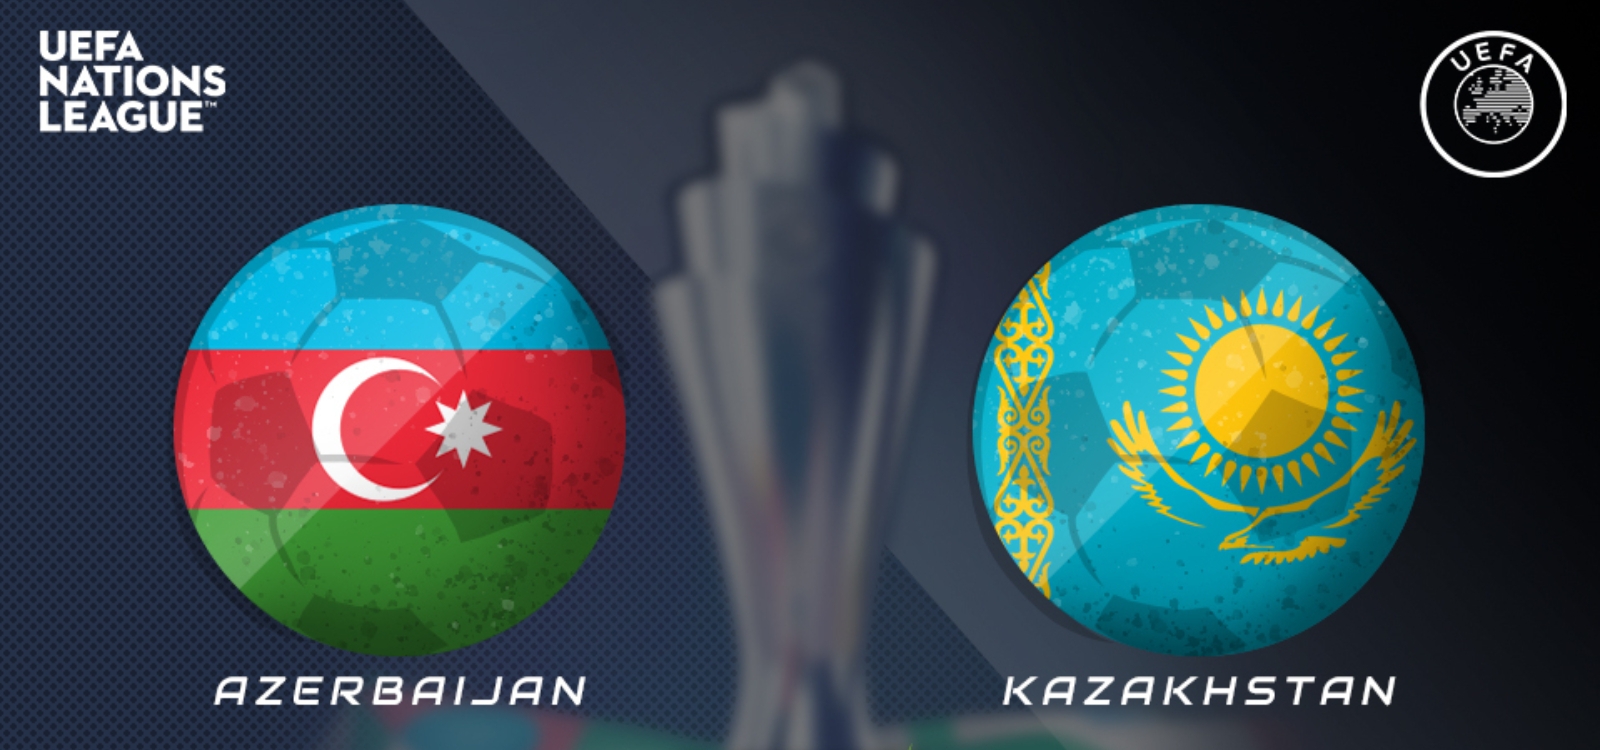 Azerbaijan vs Kazakstan